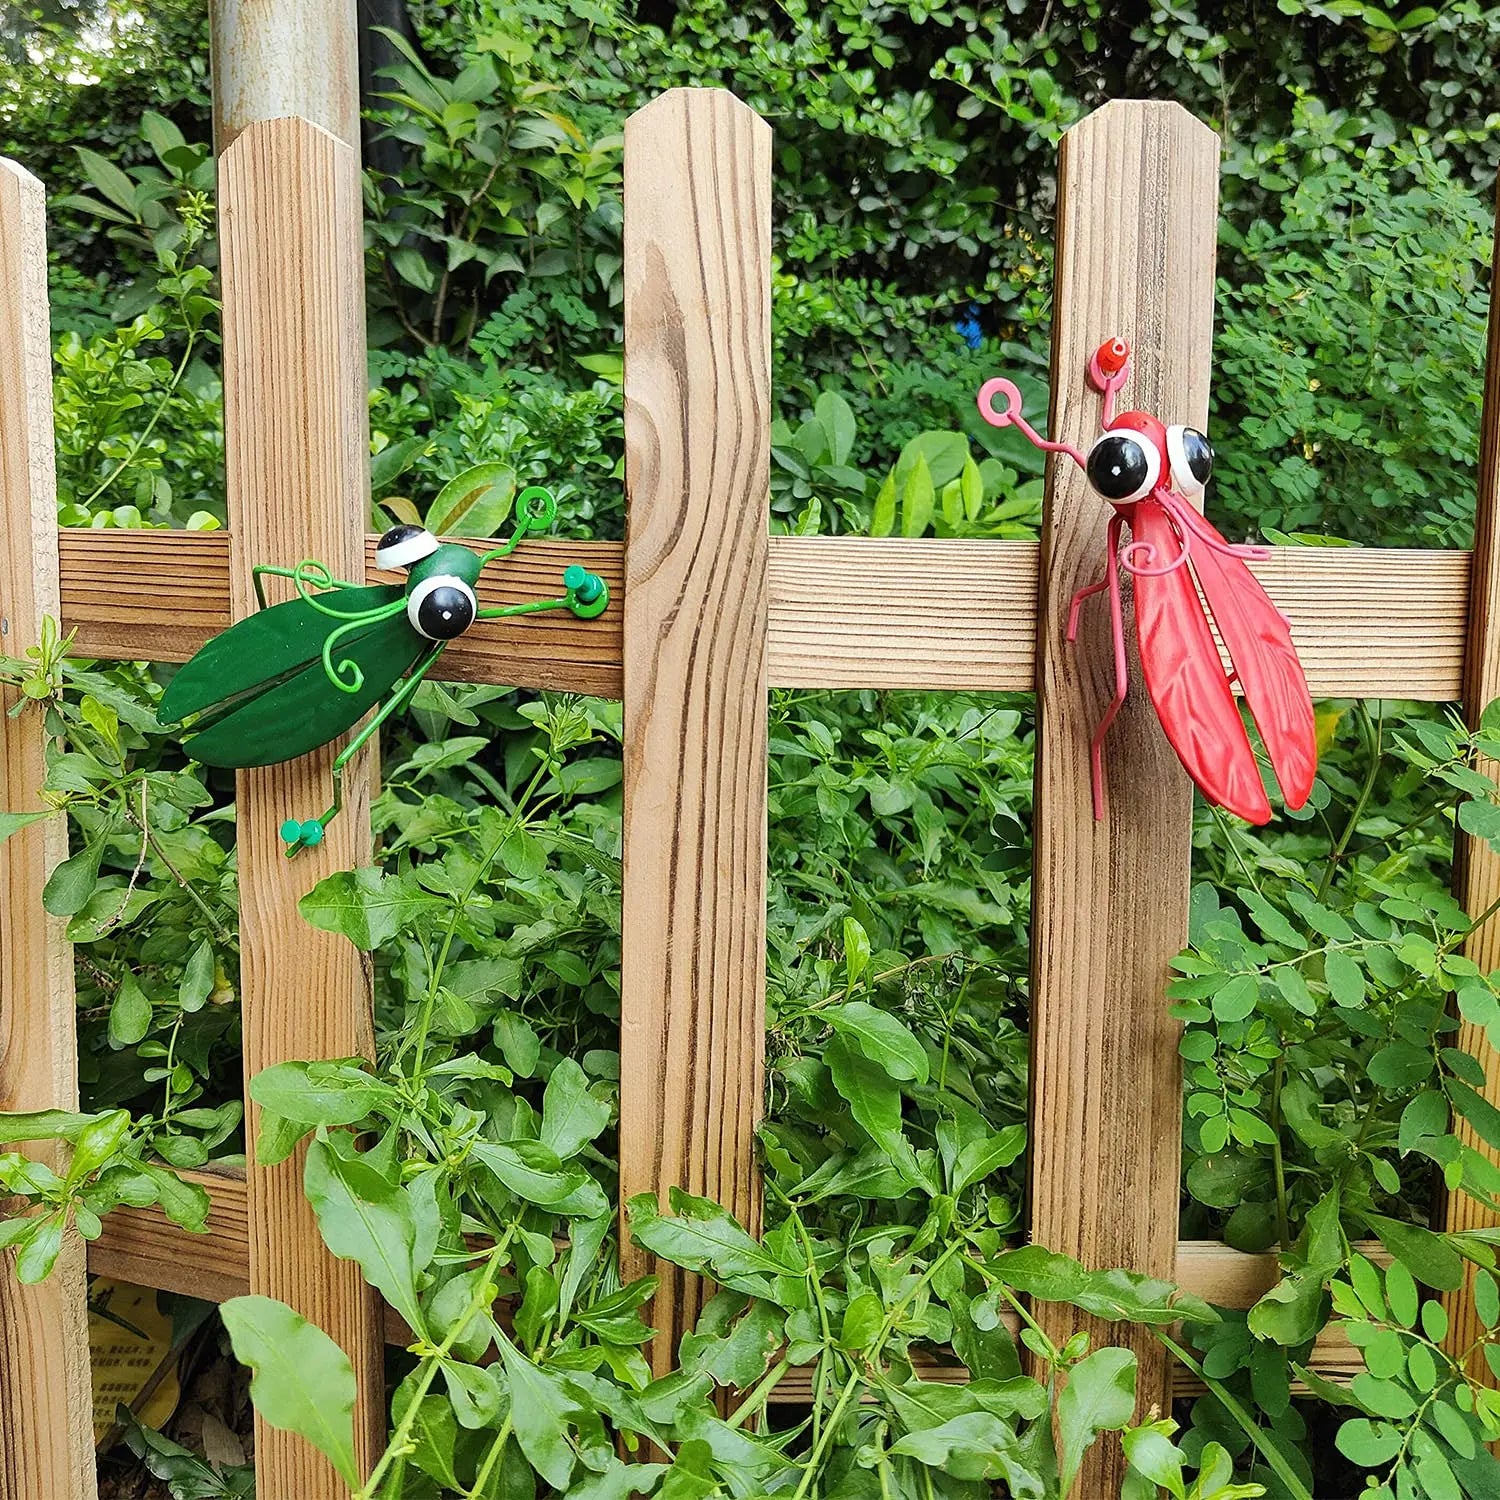 Hiasan Figurine Belalang Lopshopper Comel Luar Pokok Pohon Seni Taman Patung Belalang Taman Hiasan untuk halaman belakang patio halaman